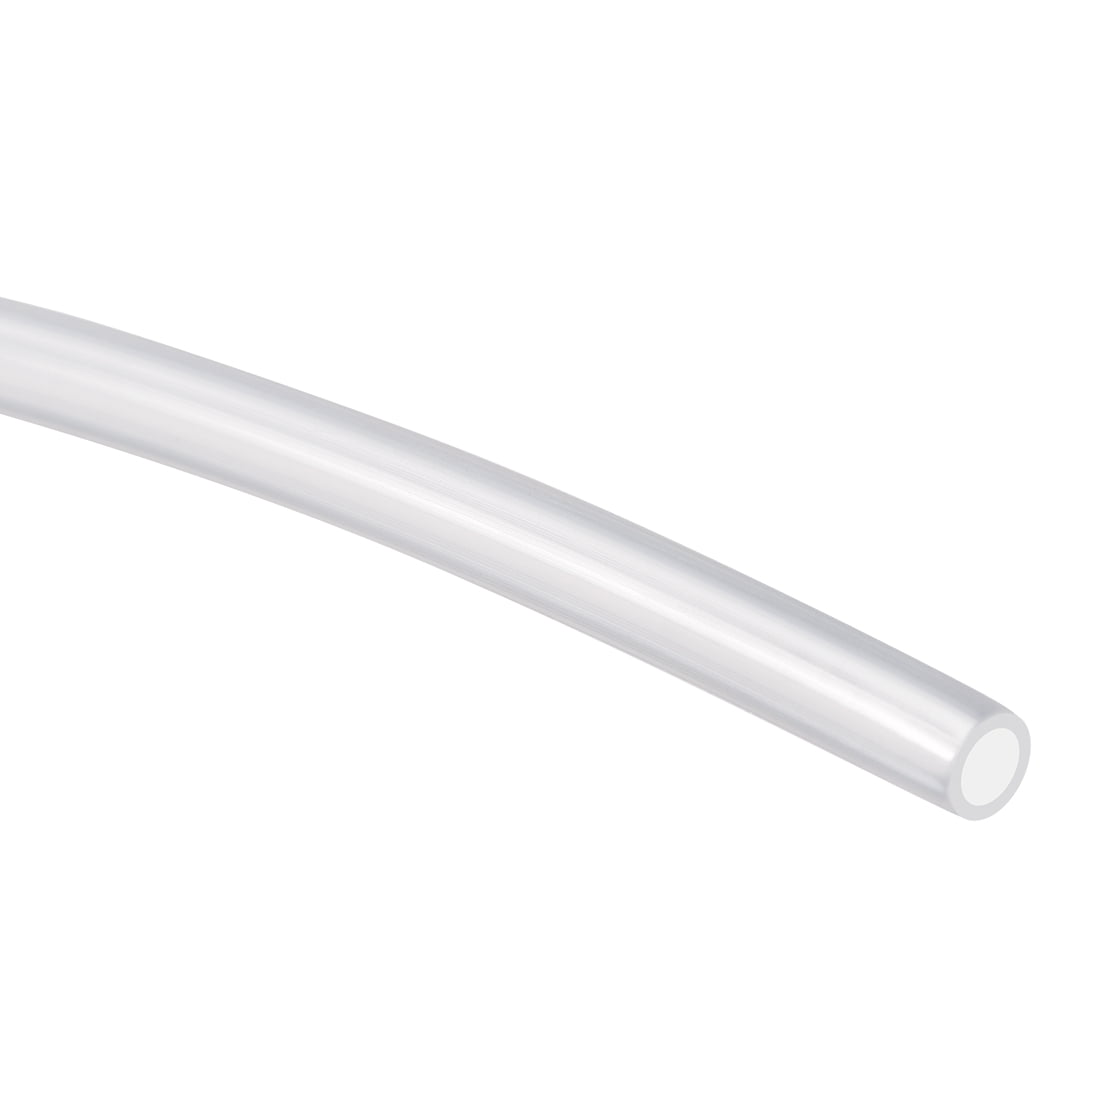 Nylon Tubing,4mmID x 1/4"OD,3.28ft Long,Air Fuel Line Plastic Tubing,Black 2pcs 